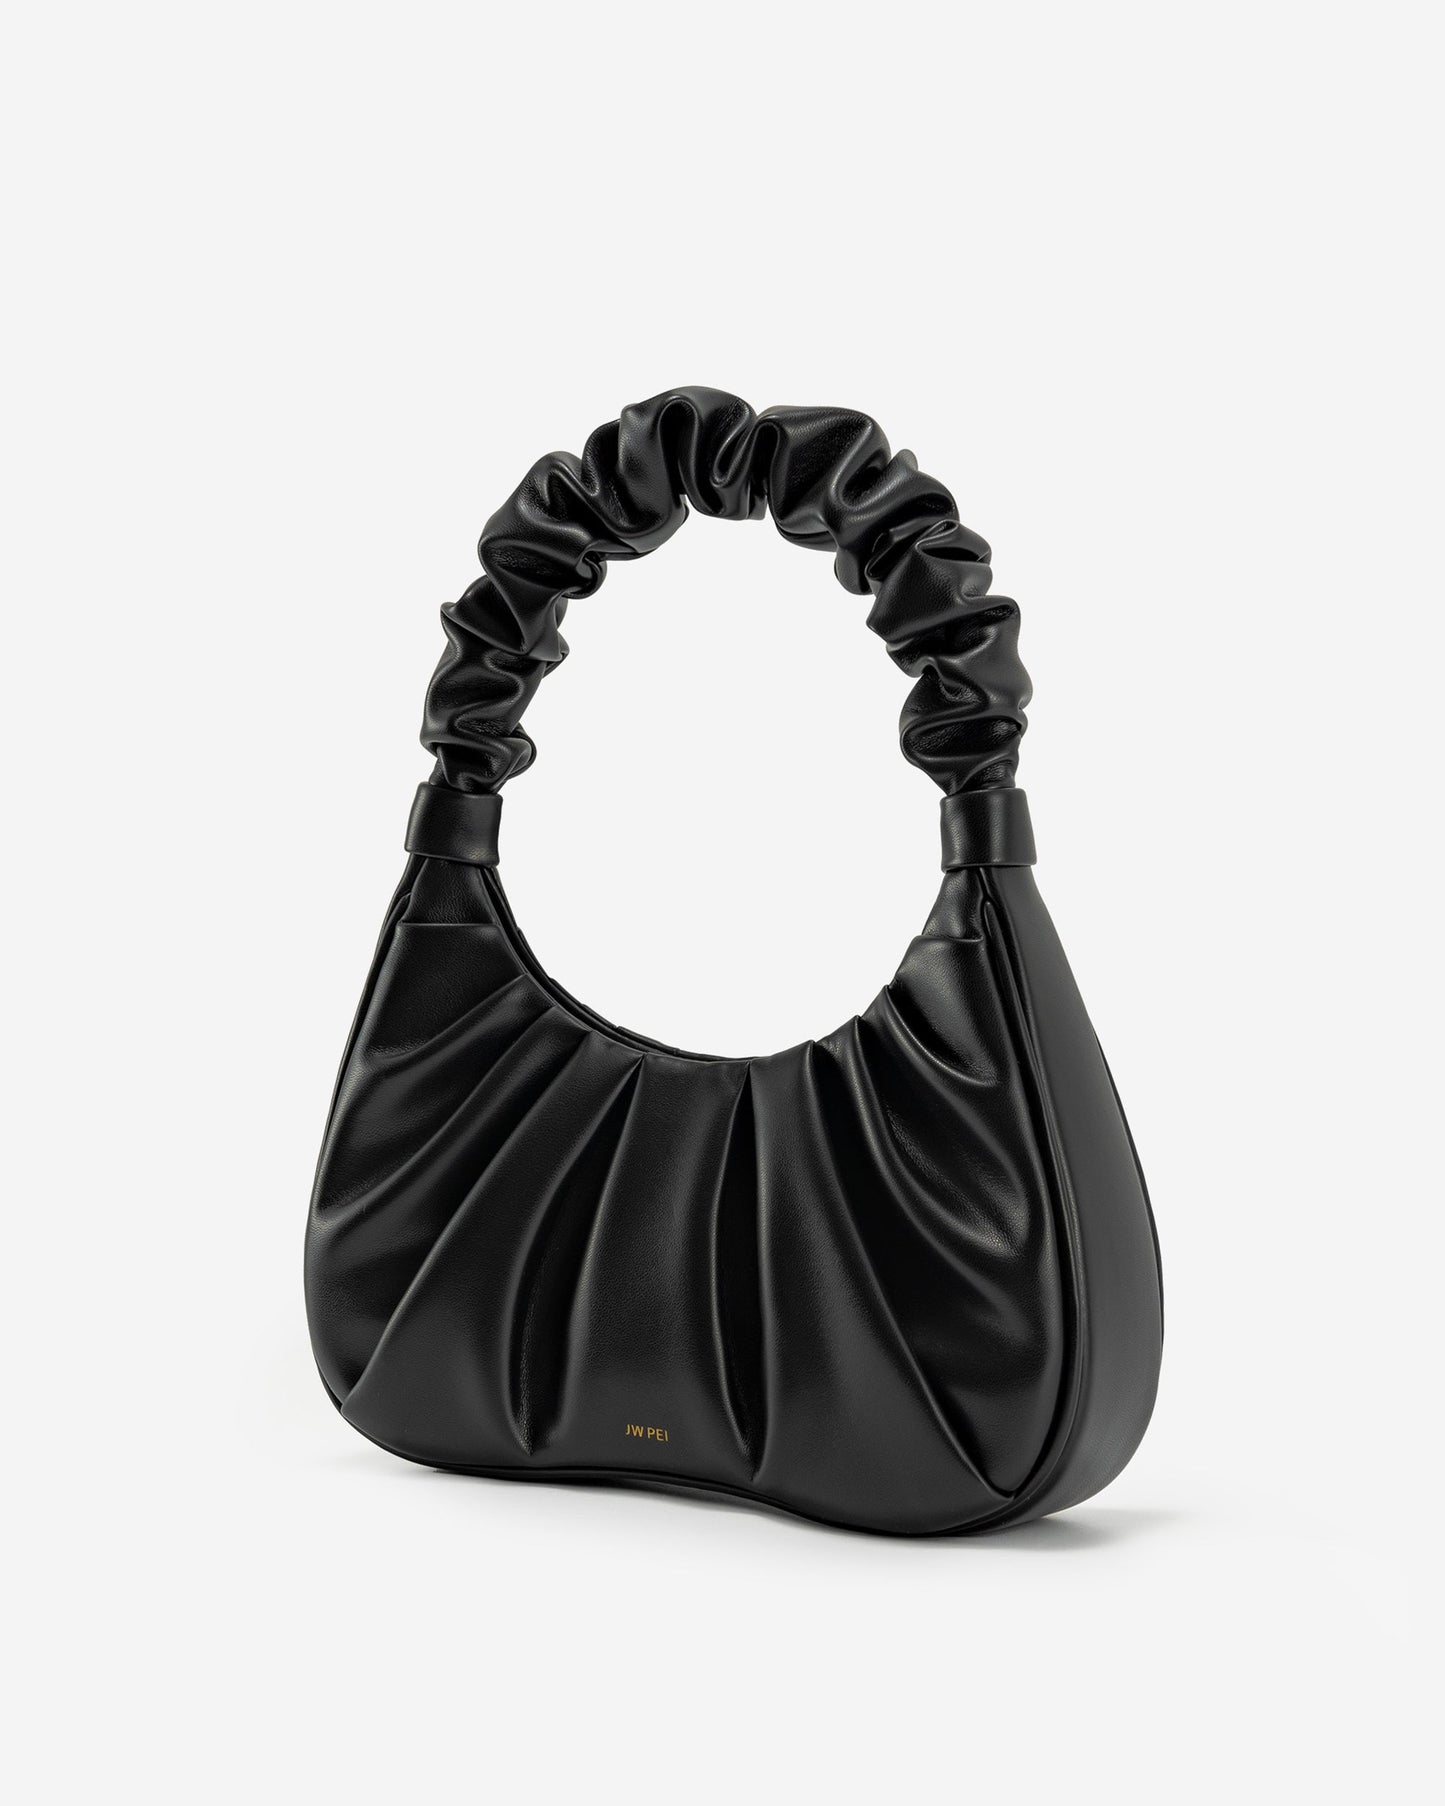 Gabbi Ruched Hobo Handbag - Black by JW Pei